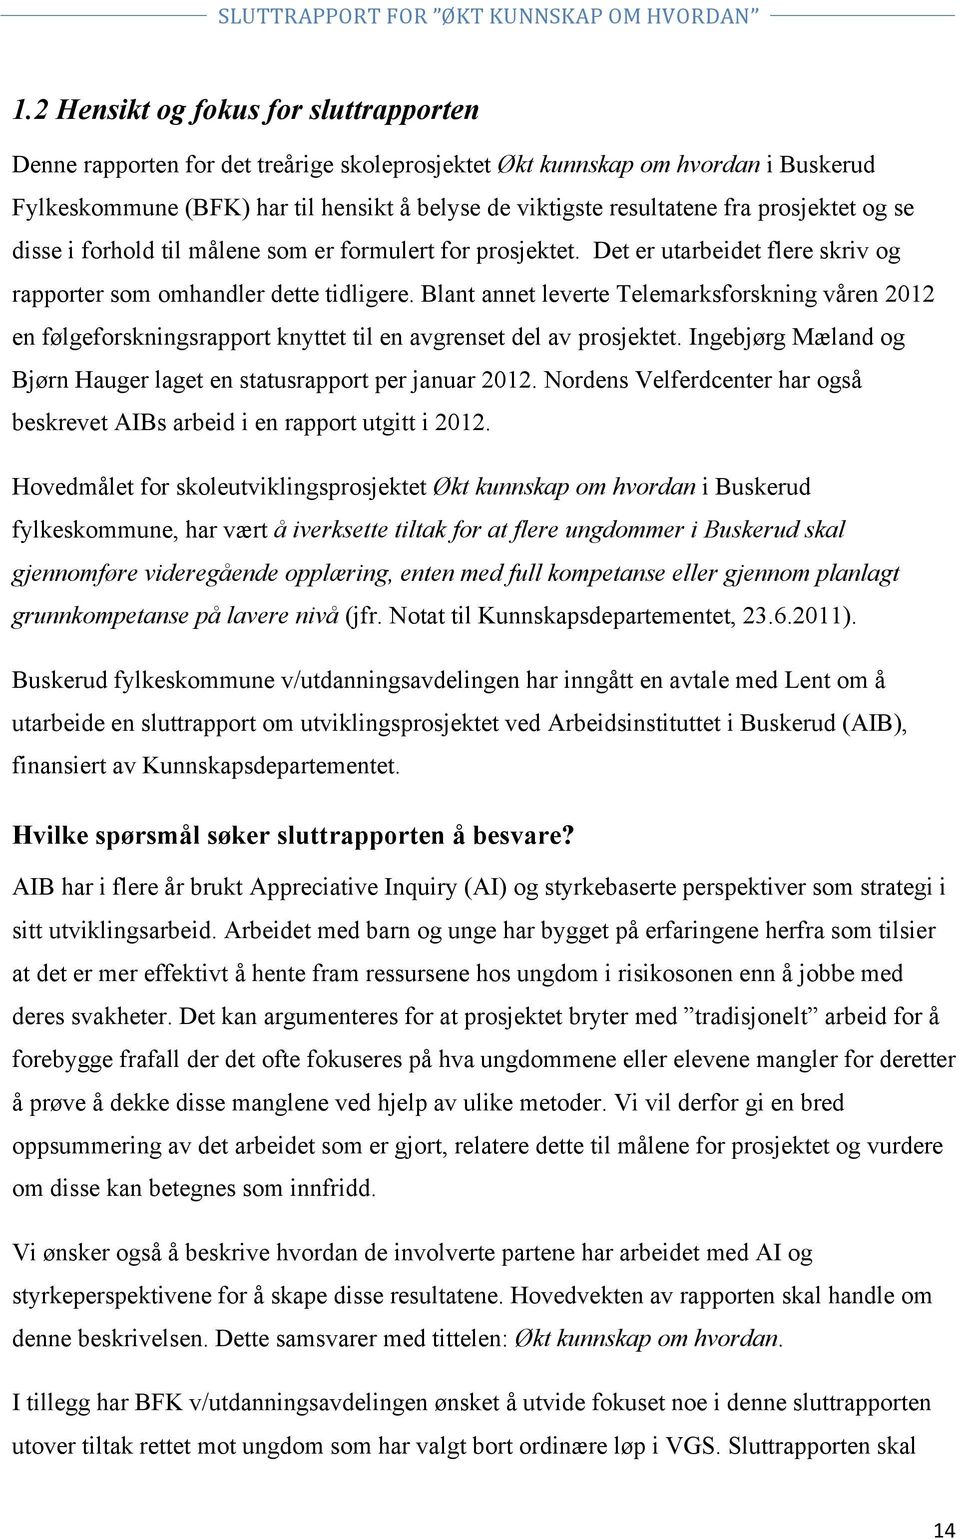 Blant annet leverte Telemarksforskning våren 2012 en følgeforskningsrapport knyttet til en avgrenset del av prosjektet. Ingebjørg Mæland og Bjørn Hauger laget en statusrapport per januar 2012.